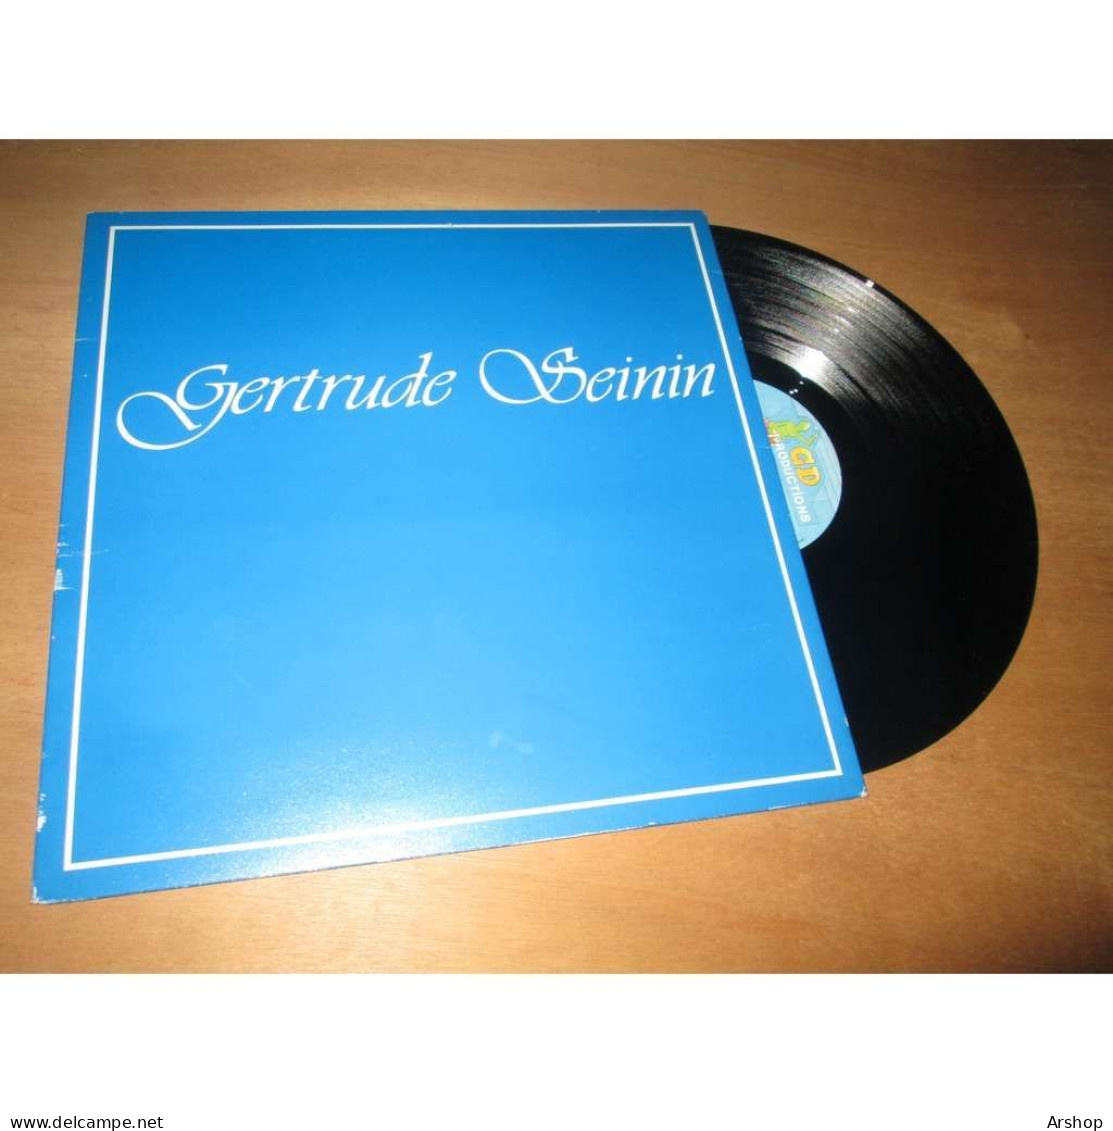 GERTRUDE SEININ Album Eponyme MARTINIQUE / MUSIQUE ANTILLAISE - GD Productions GD 032 Lp 1985 - Wereldmuziek